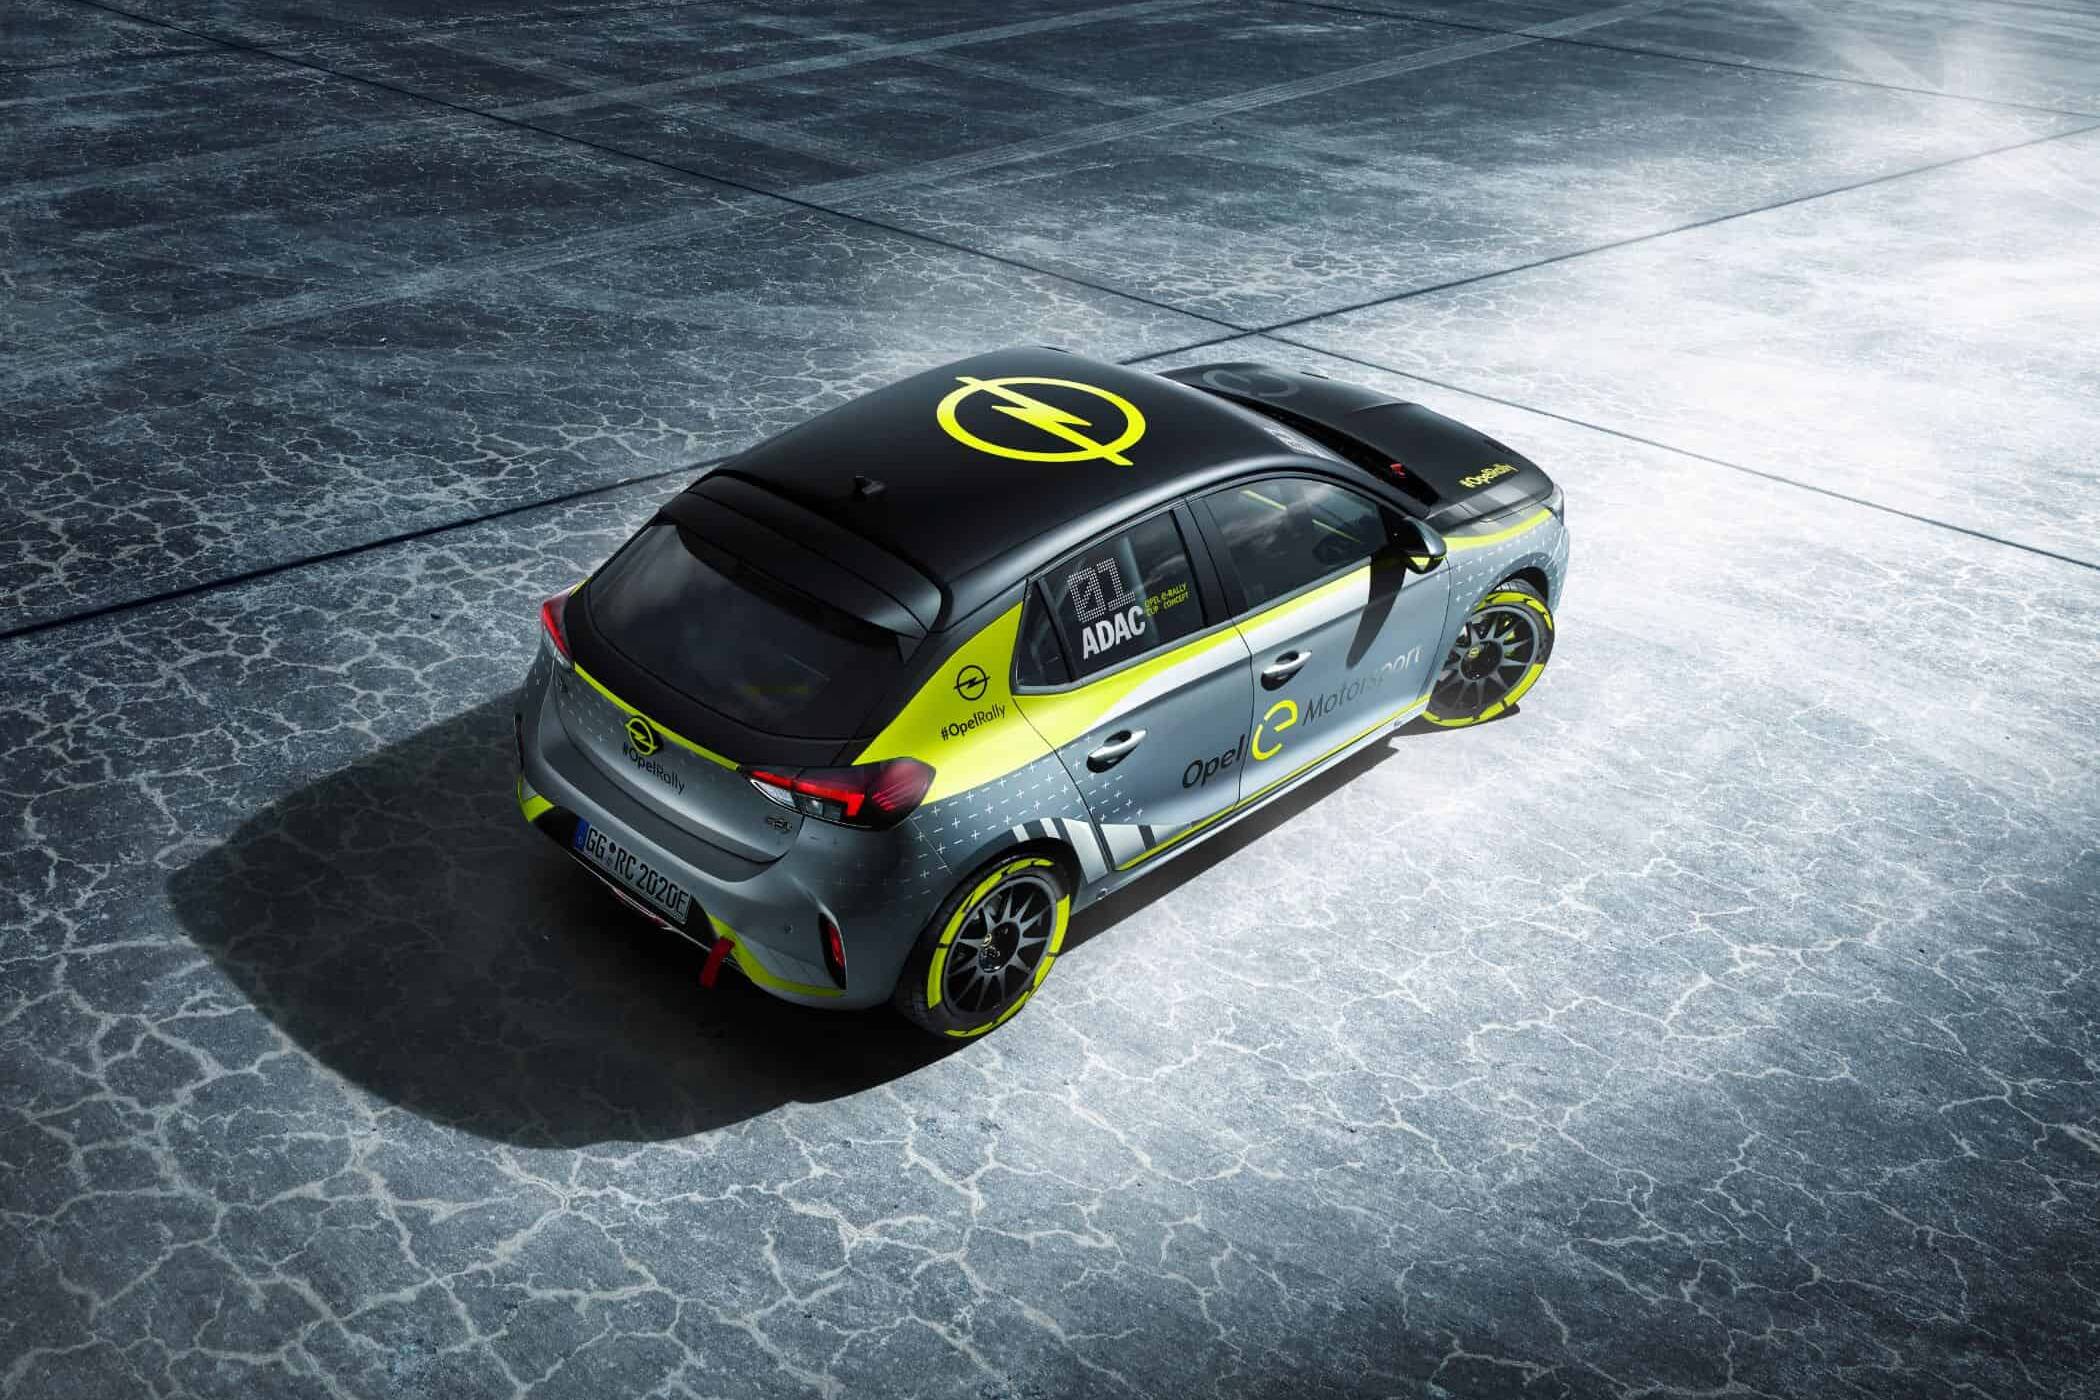 Neues batterie-elektrisches Rallyeauto auf Basis des Corsa-e